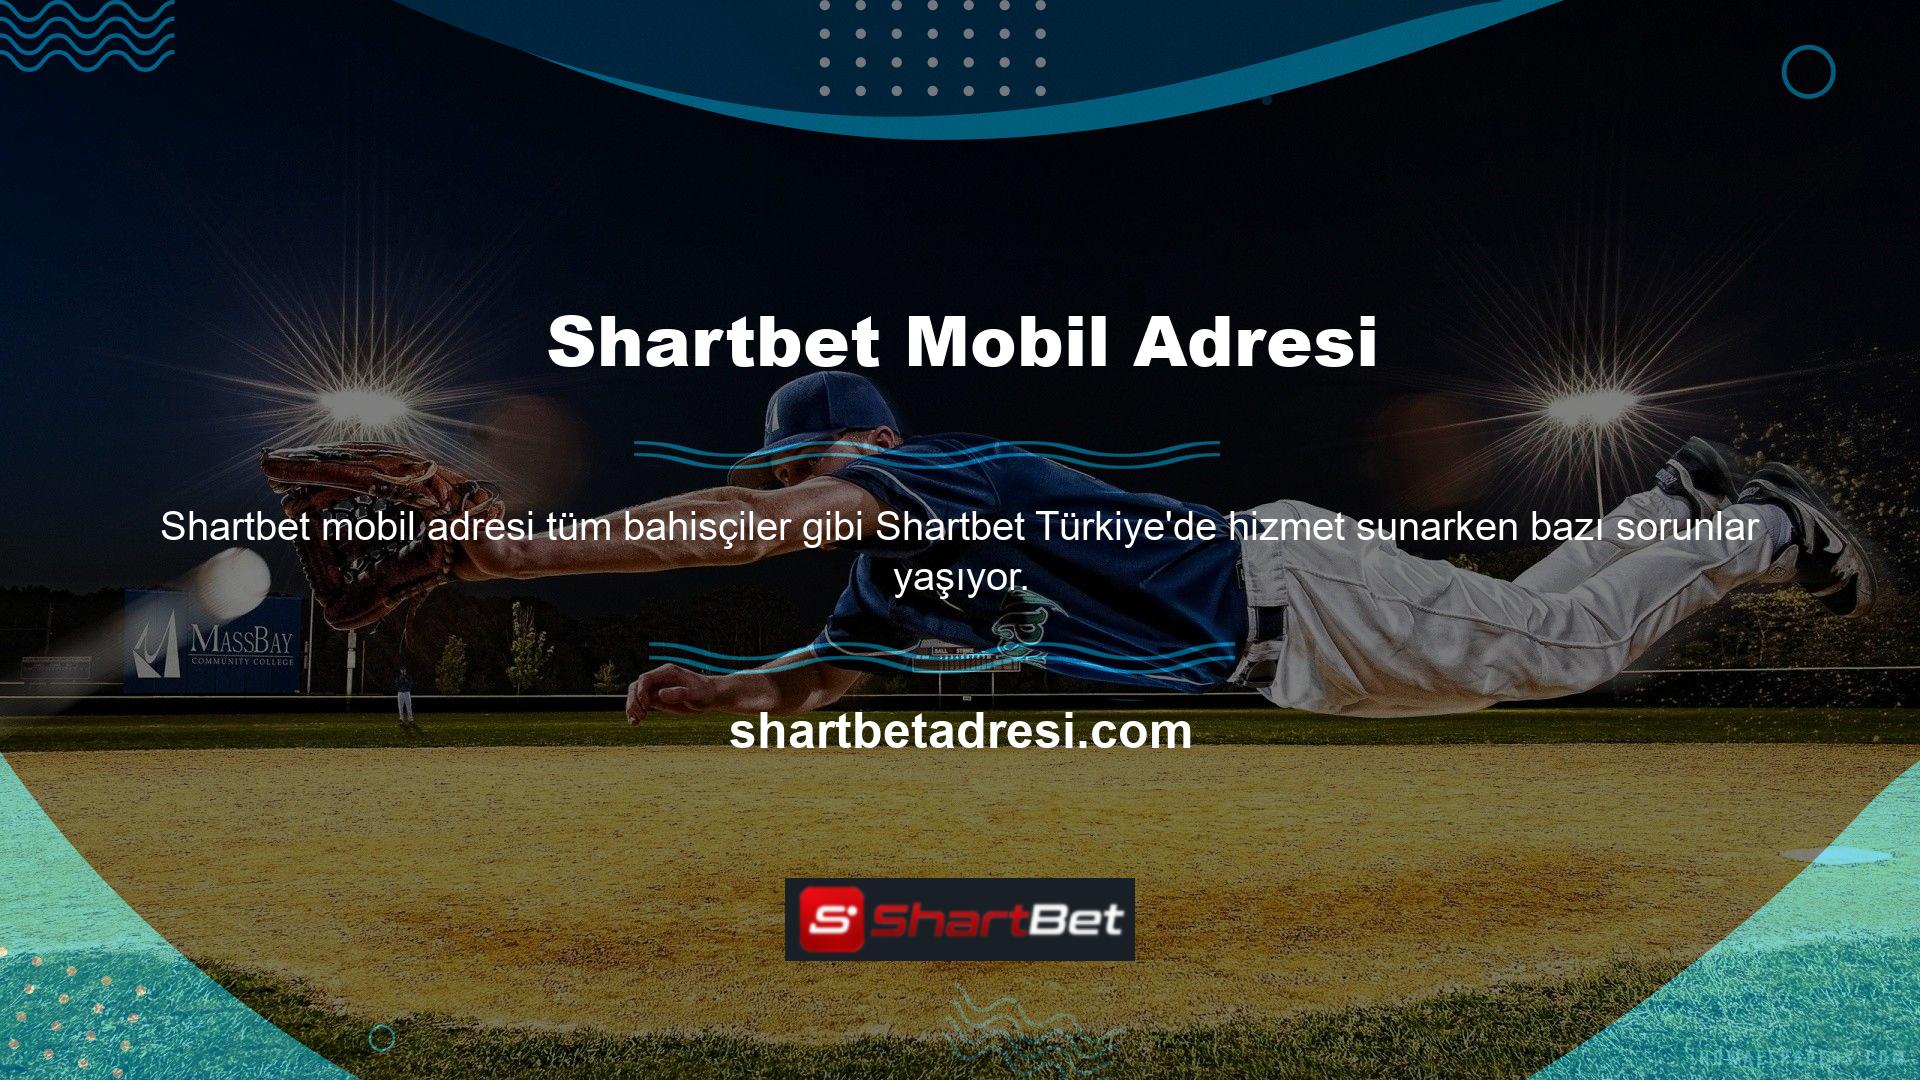 Shartbet BTK'nın kararı nedeniyle Türkiye'de çalışmayabilecek oyun platformlarından biridir